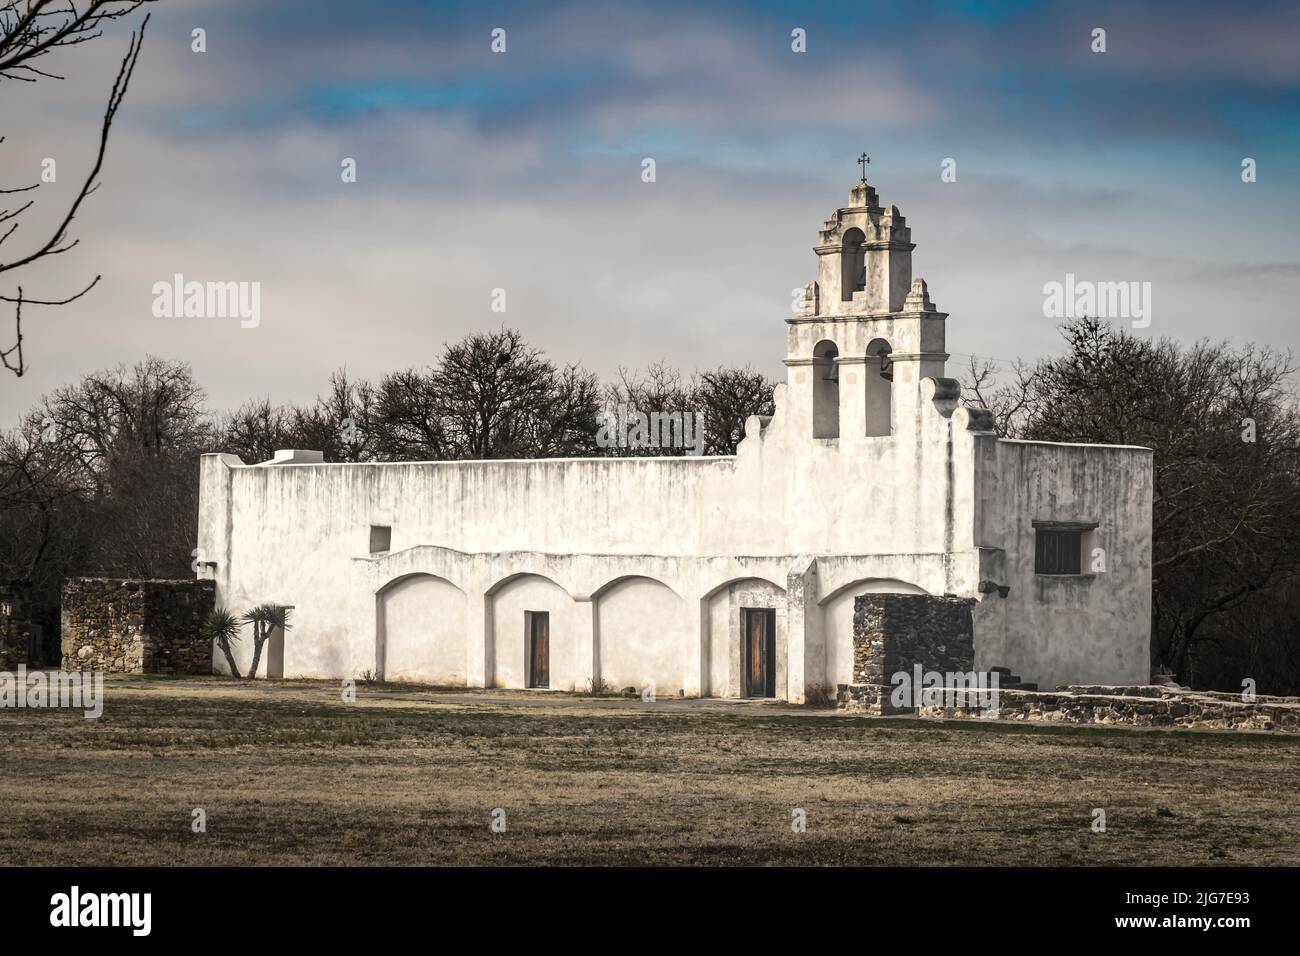 Mission San Juan è forte come parte del San Antonio Missions National Historical Park nel Texas meridionale. Foto Stock